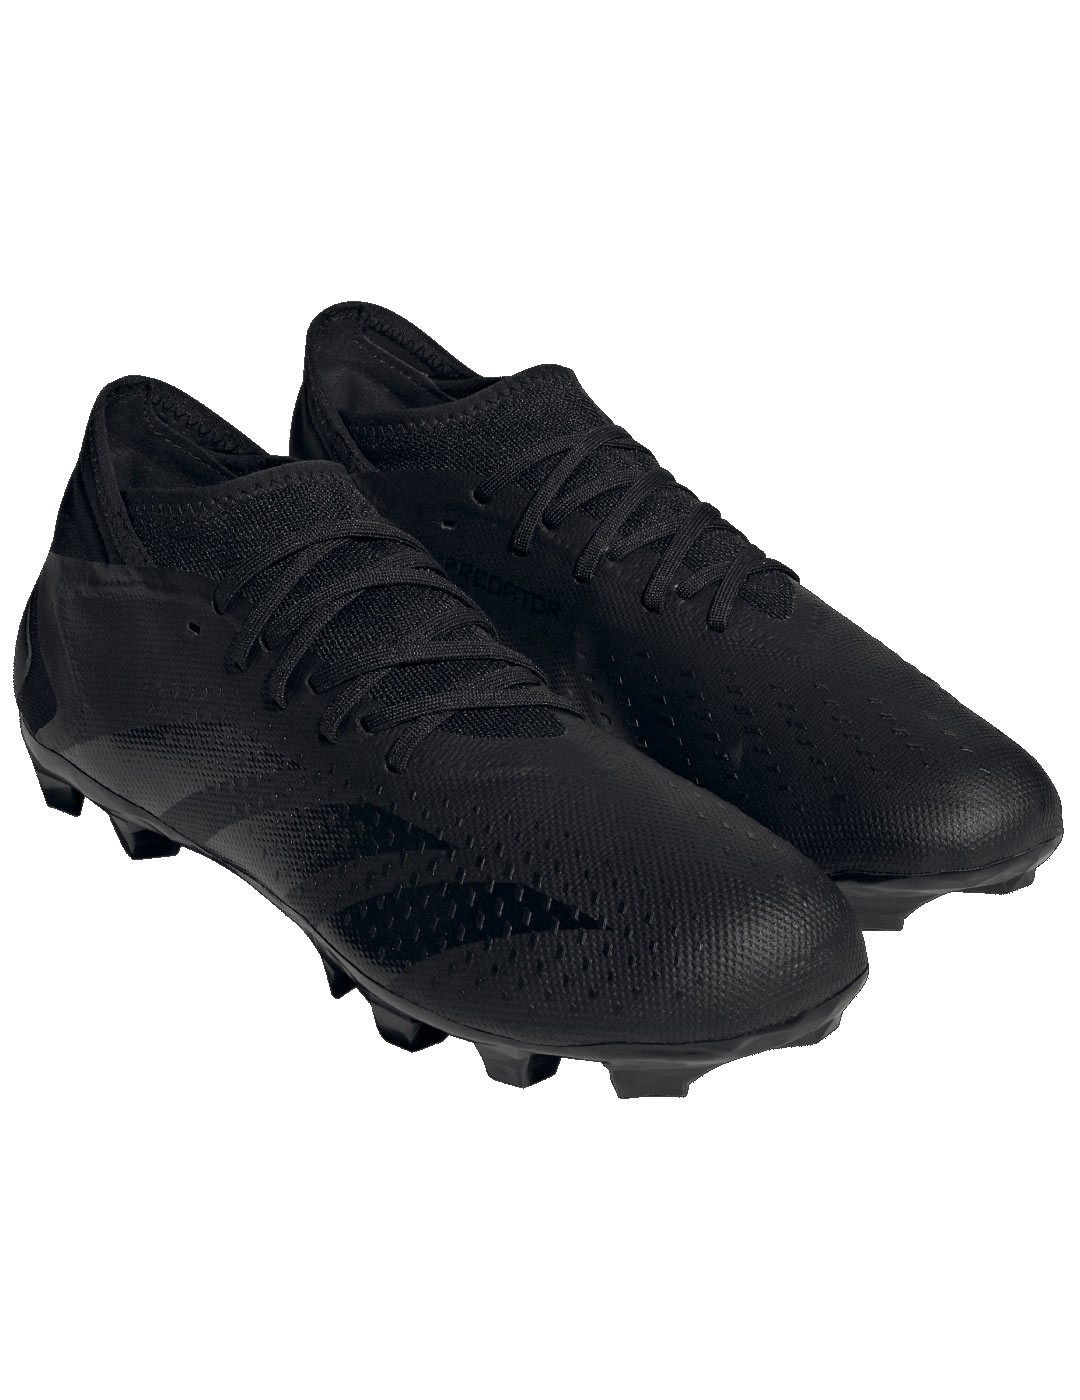 bota de fútbol adidas PREDATOR ACCURACY.3 MG, negro